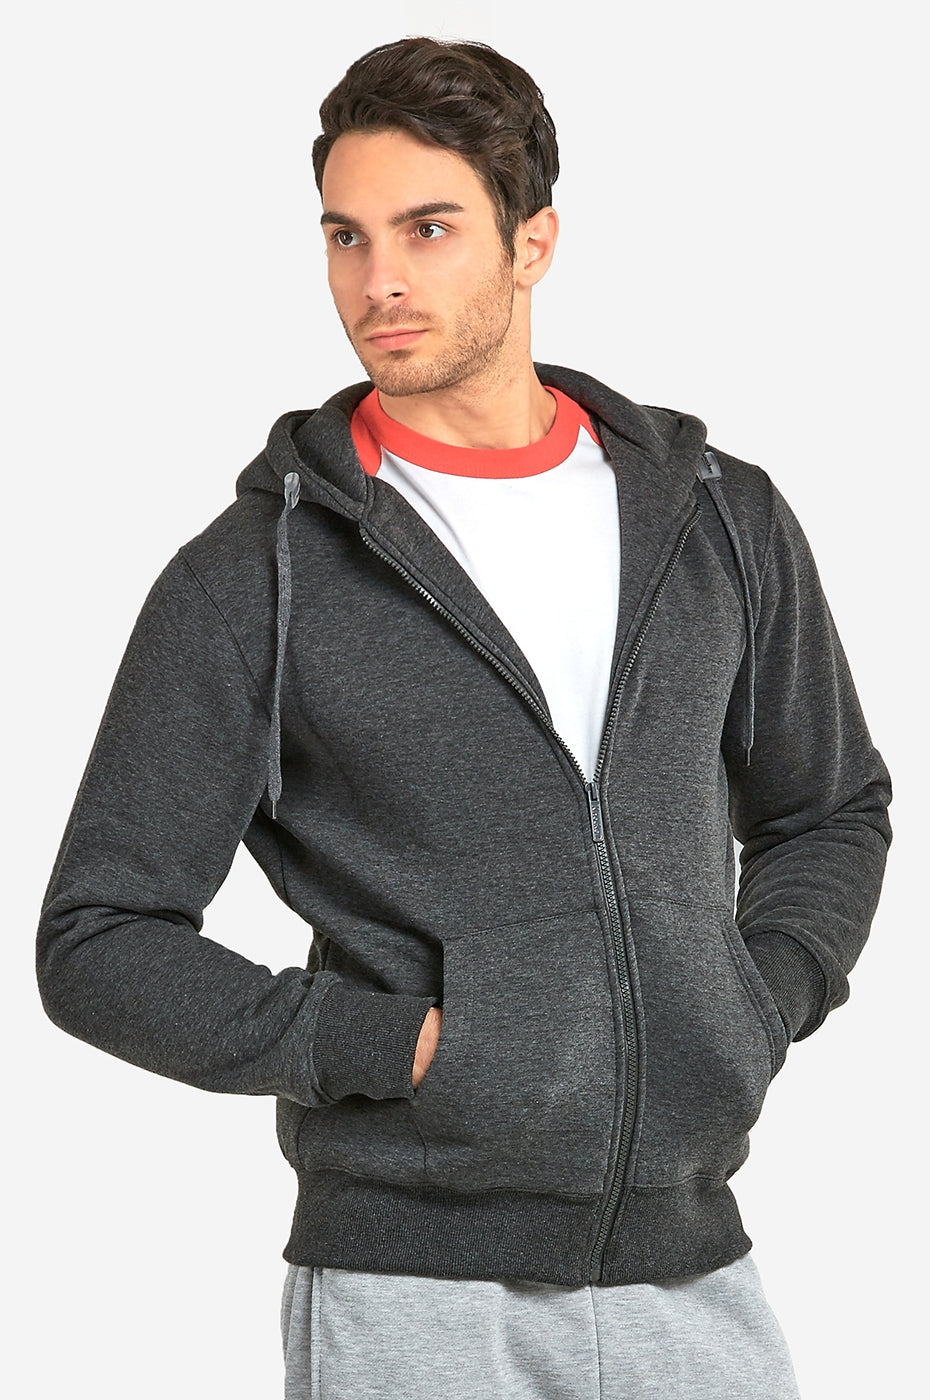 Men's Essentials Knocker Heavy Fabric Cotton Blend Full Zip Fleece Hoodie Jacket (HD2000_CGY)